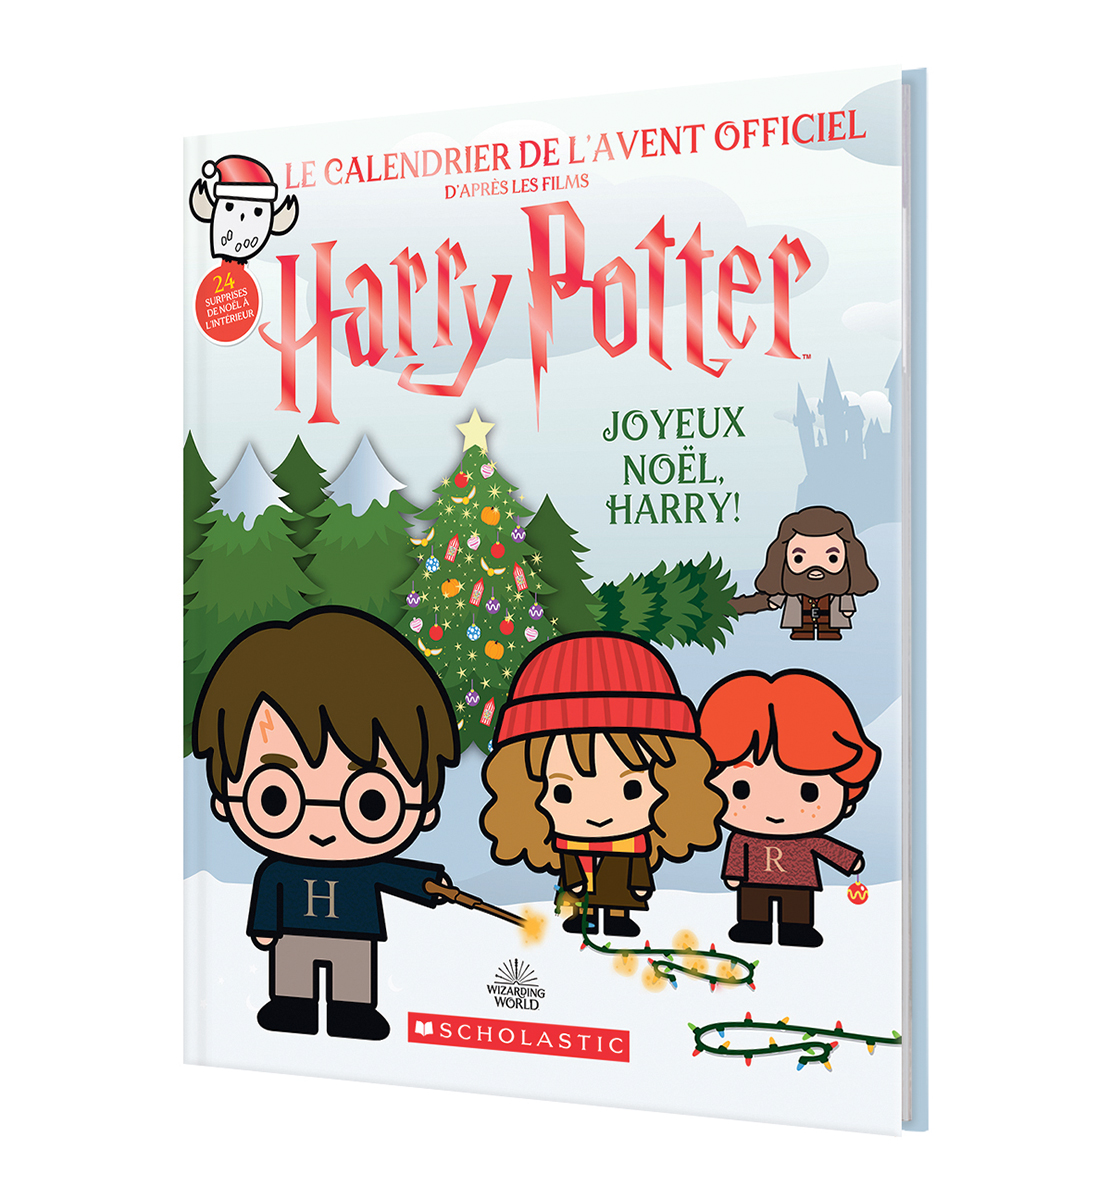  Harry Potter : Joyeux Noël, Harry! Le calendrier de l'Avent officiel 